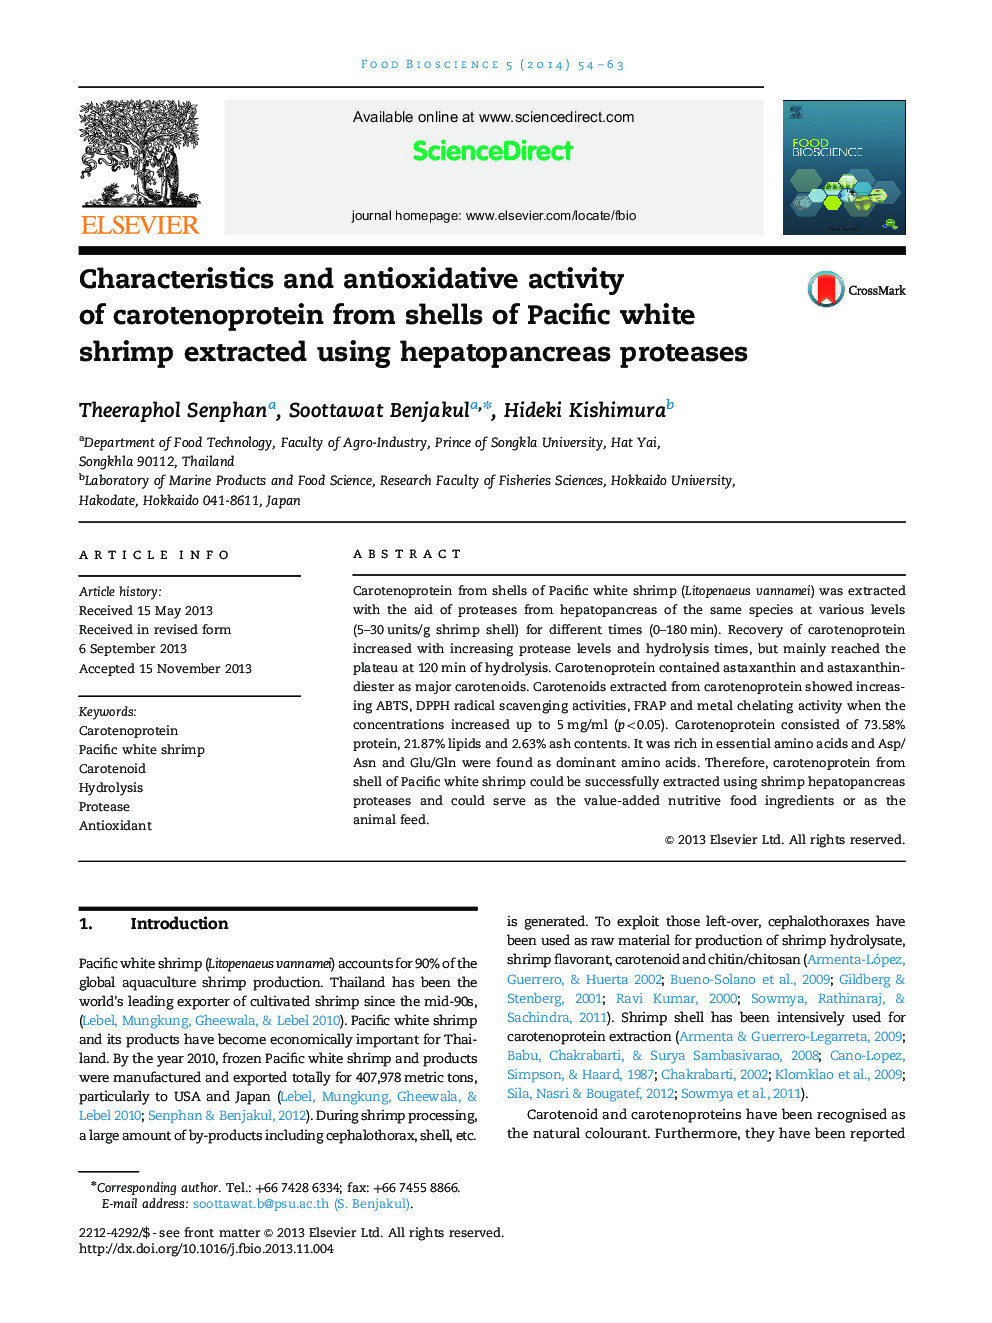 ویژگی ها و فعالیت آنتی اکسیداتیو کاروتنوپروتئین از پوسته میگوی سفید ساحلی اقیانوس آرام استخراج شده با استفاده از پروتئین های هپاتوپانکراس 